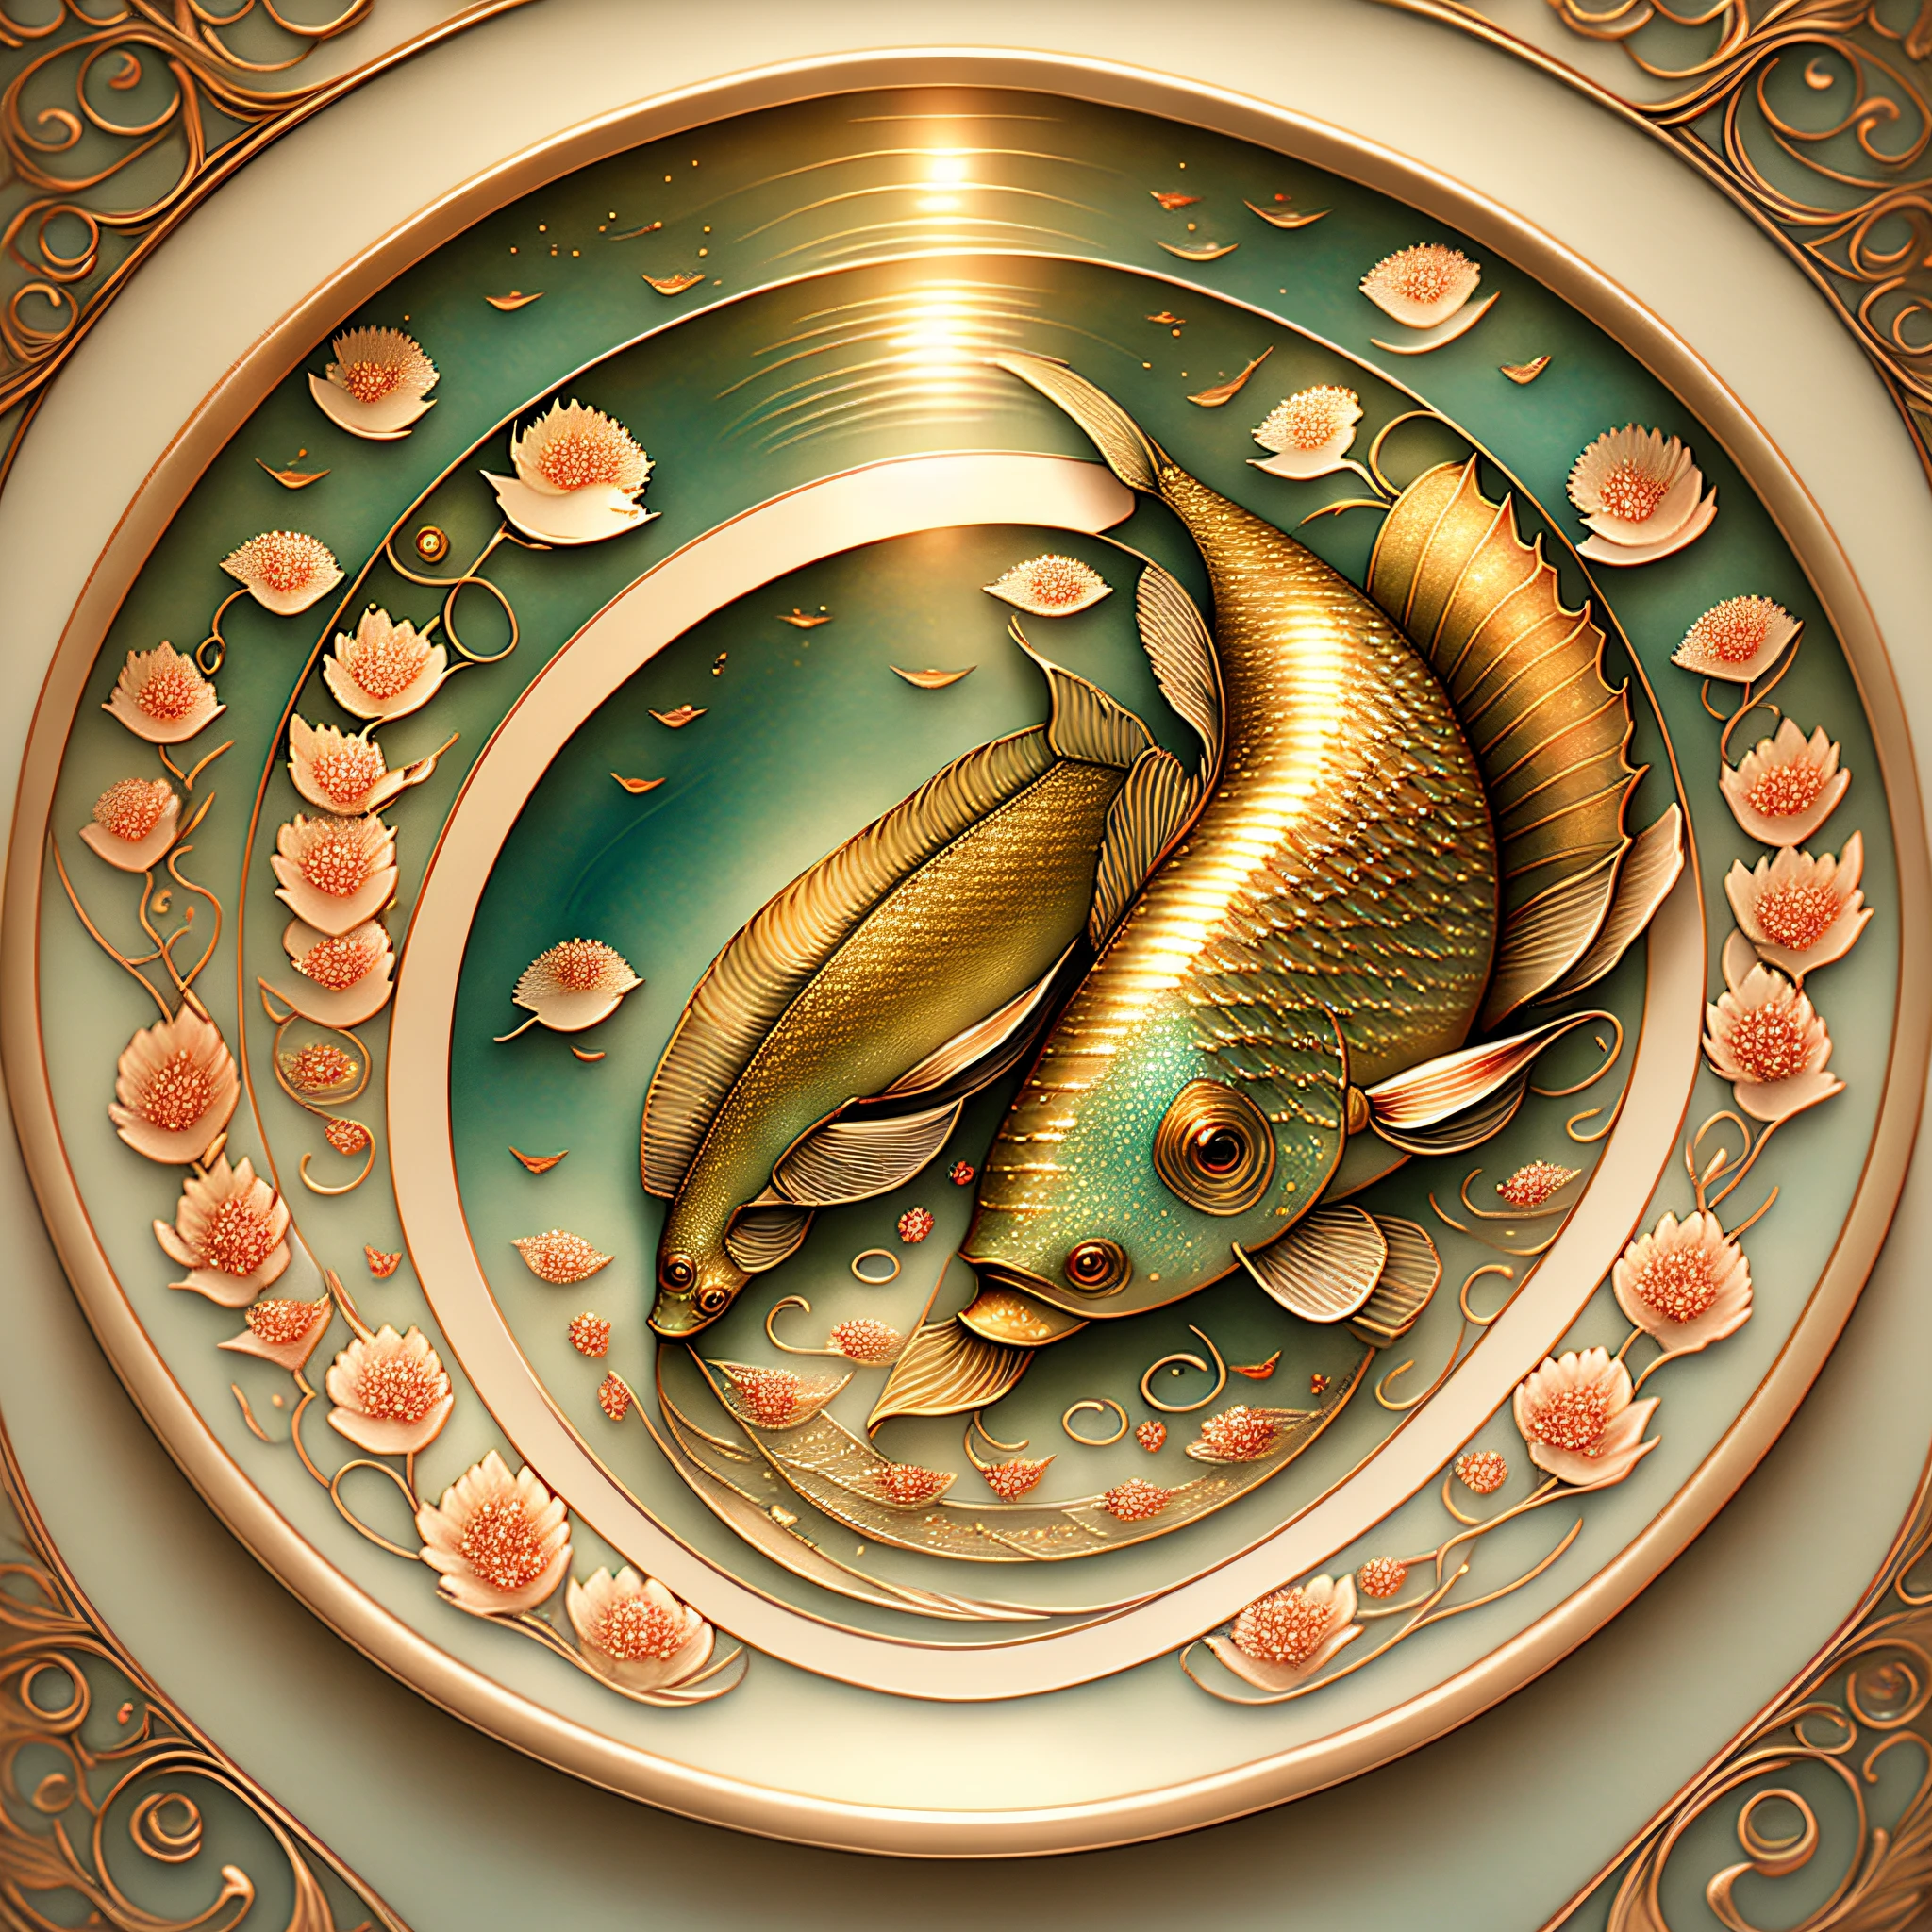 两条美丽的鲤鱼在水中游动, 见面, 复杂的细节, 令人惊叹的效果图, 以光芒四射的方式, 灵感来自 Kinuko Y. 工艺, 魔法元素, 鲤鱼图标,